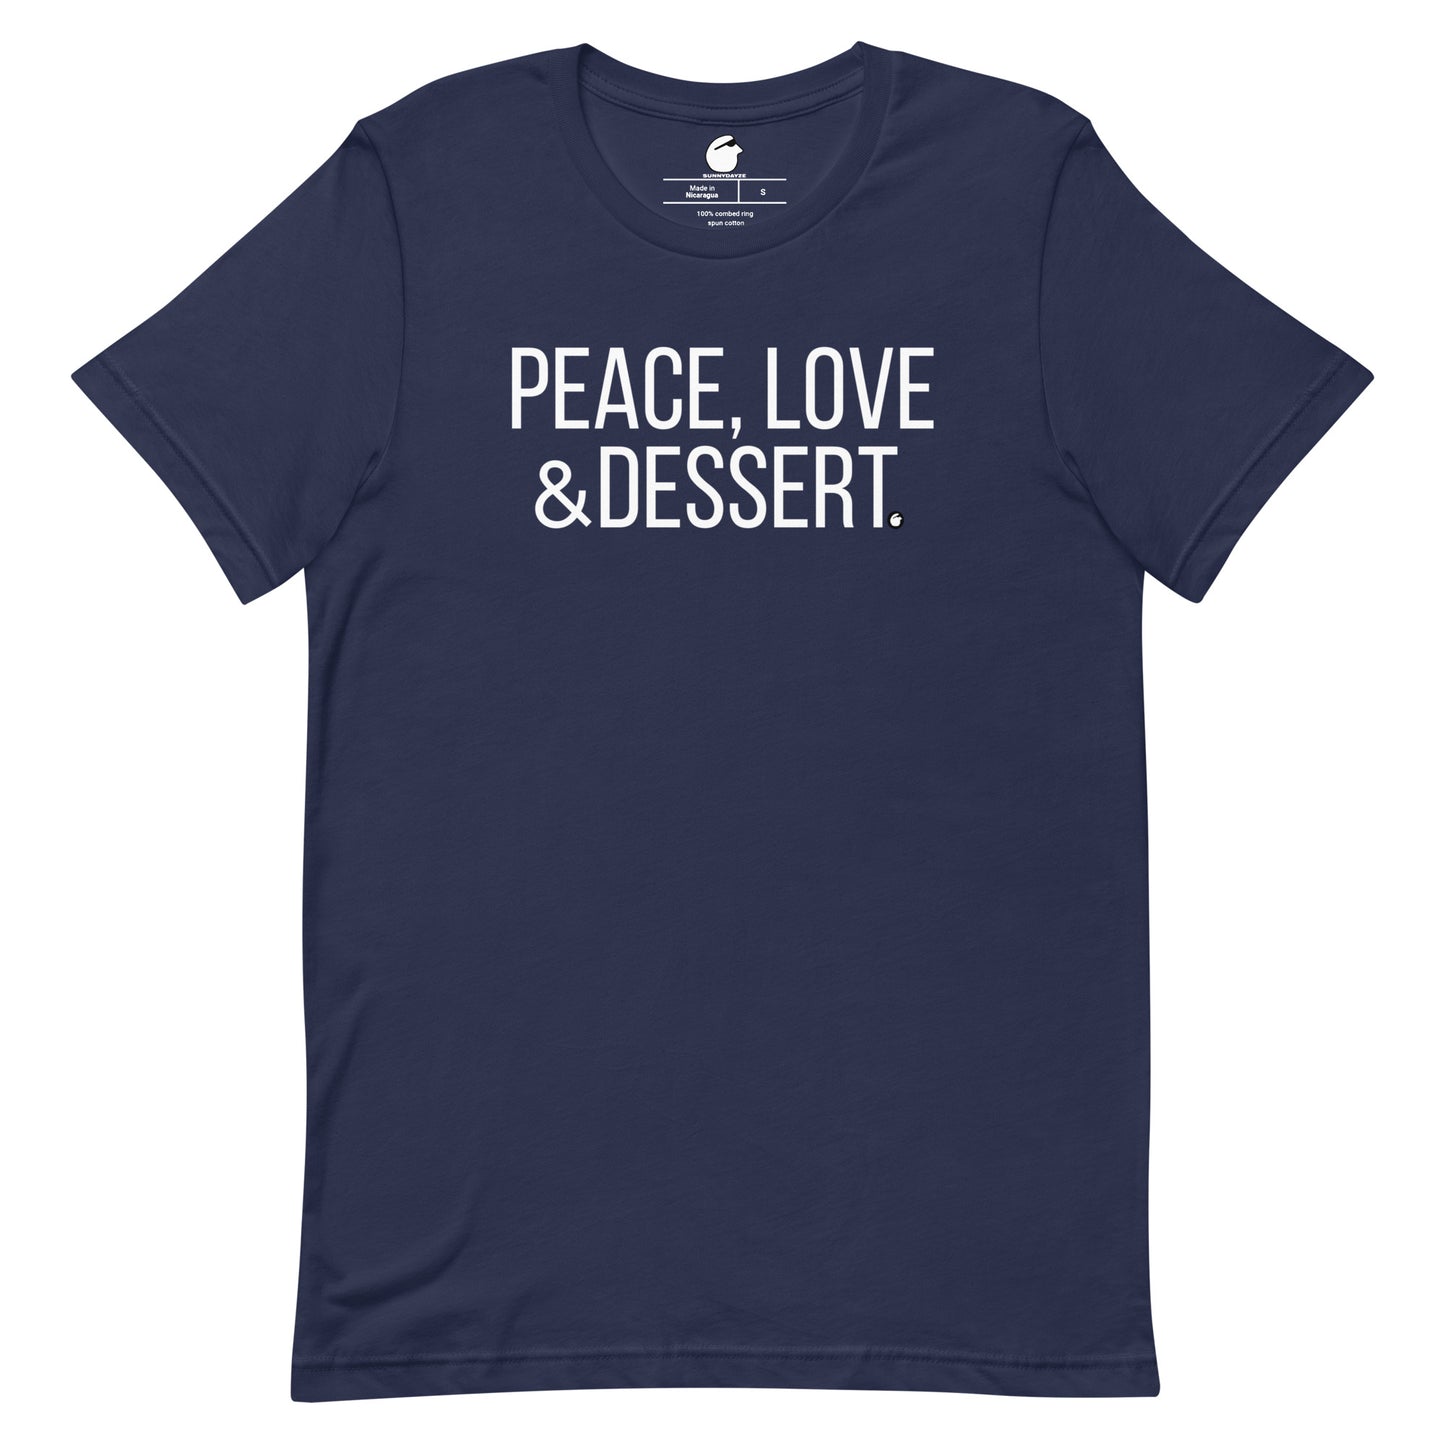 DESSERT Short-Sleeve Unisex t-shirt